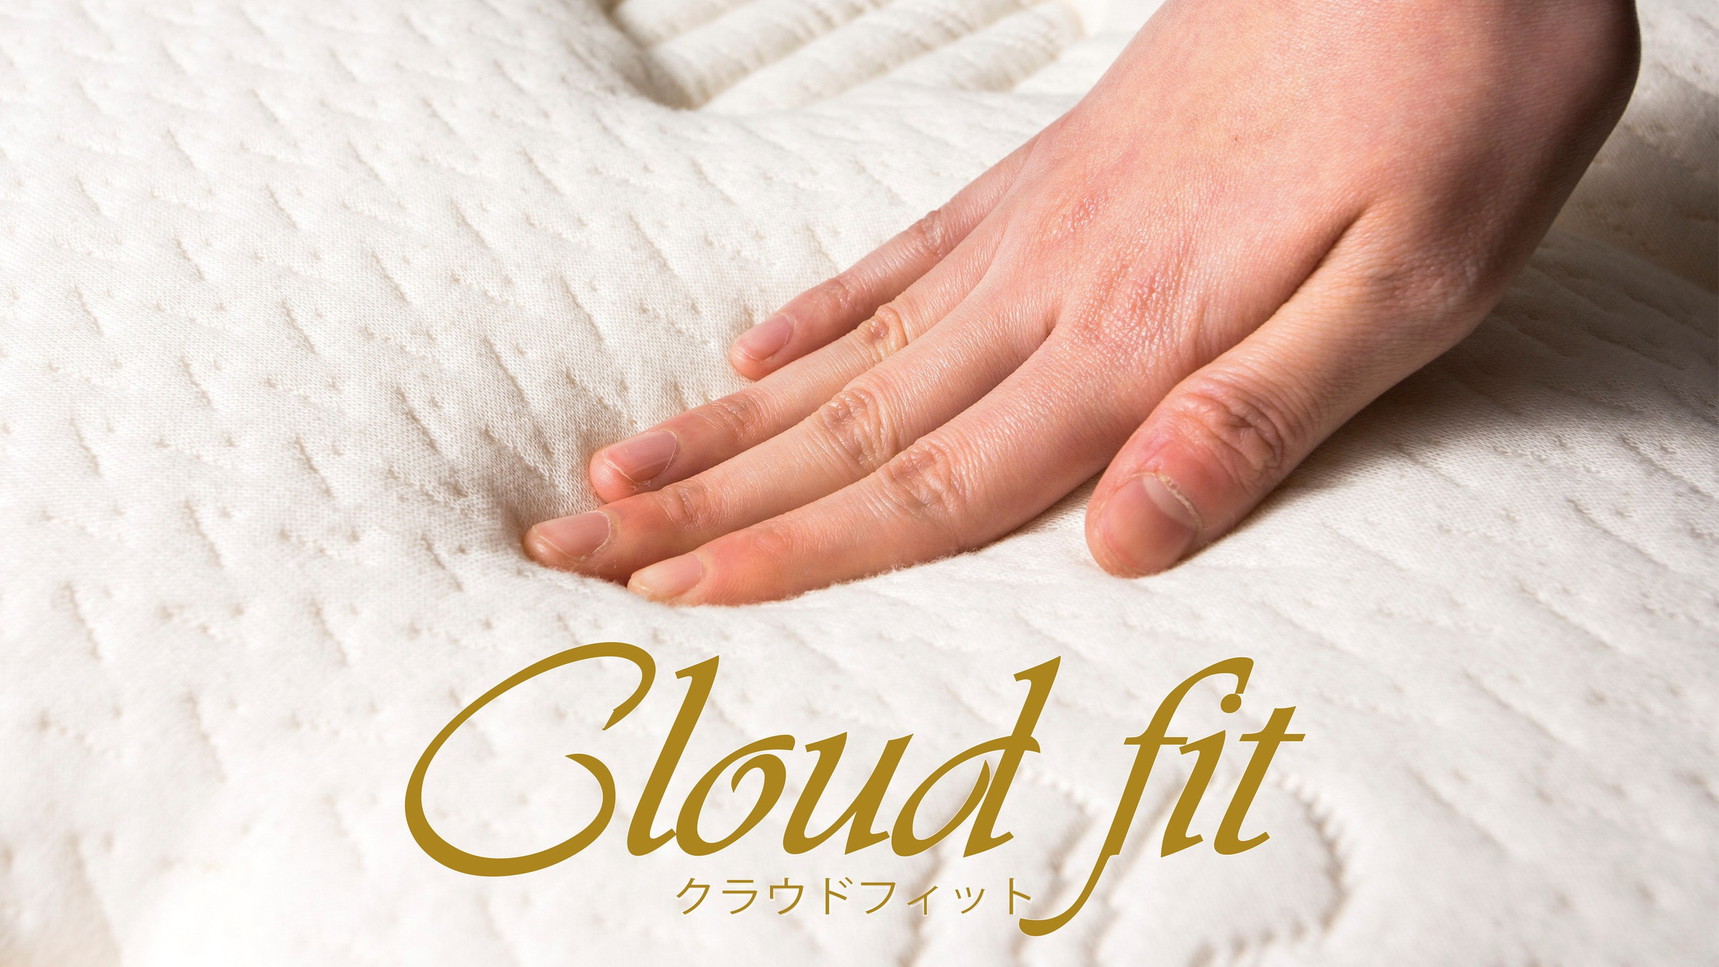 オリジナルベッド「Cloud fit(クラウドフィット)」